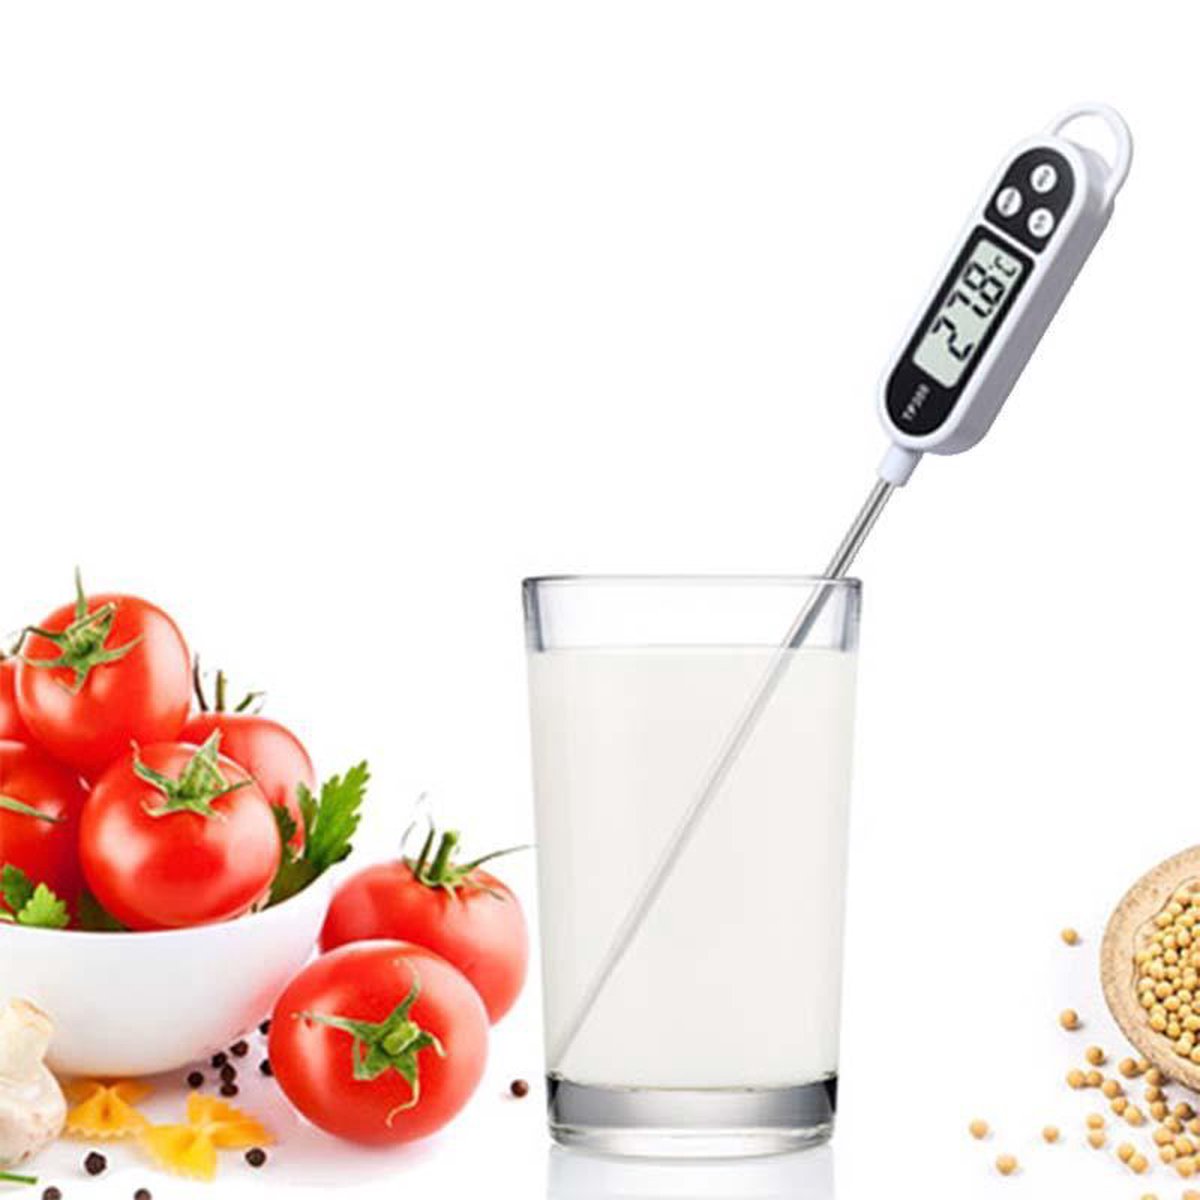 Digitale Kook Thermometer voor Keuken Binnen en Buiten \Koken, Melk, Vlees, BBQ, Water, Thee - G@briel